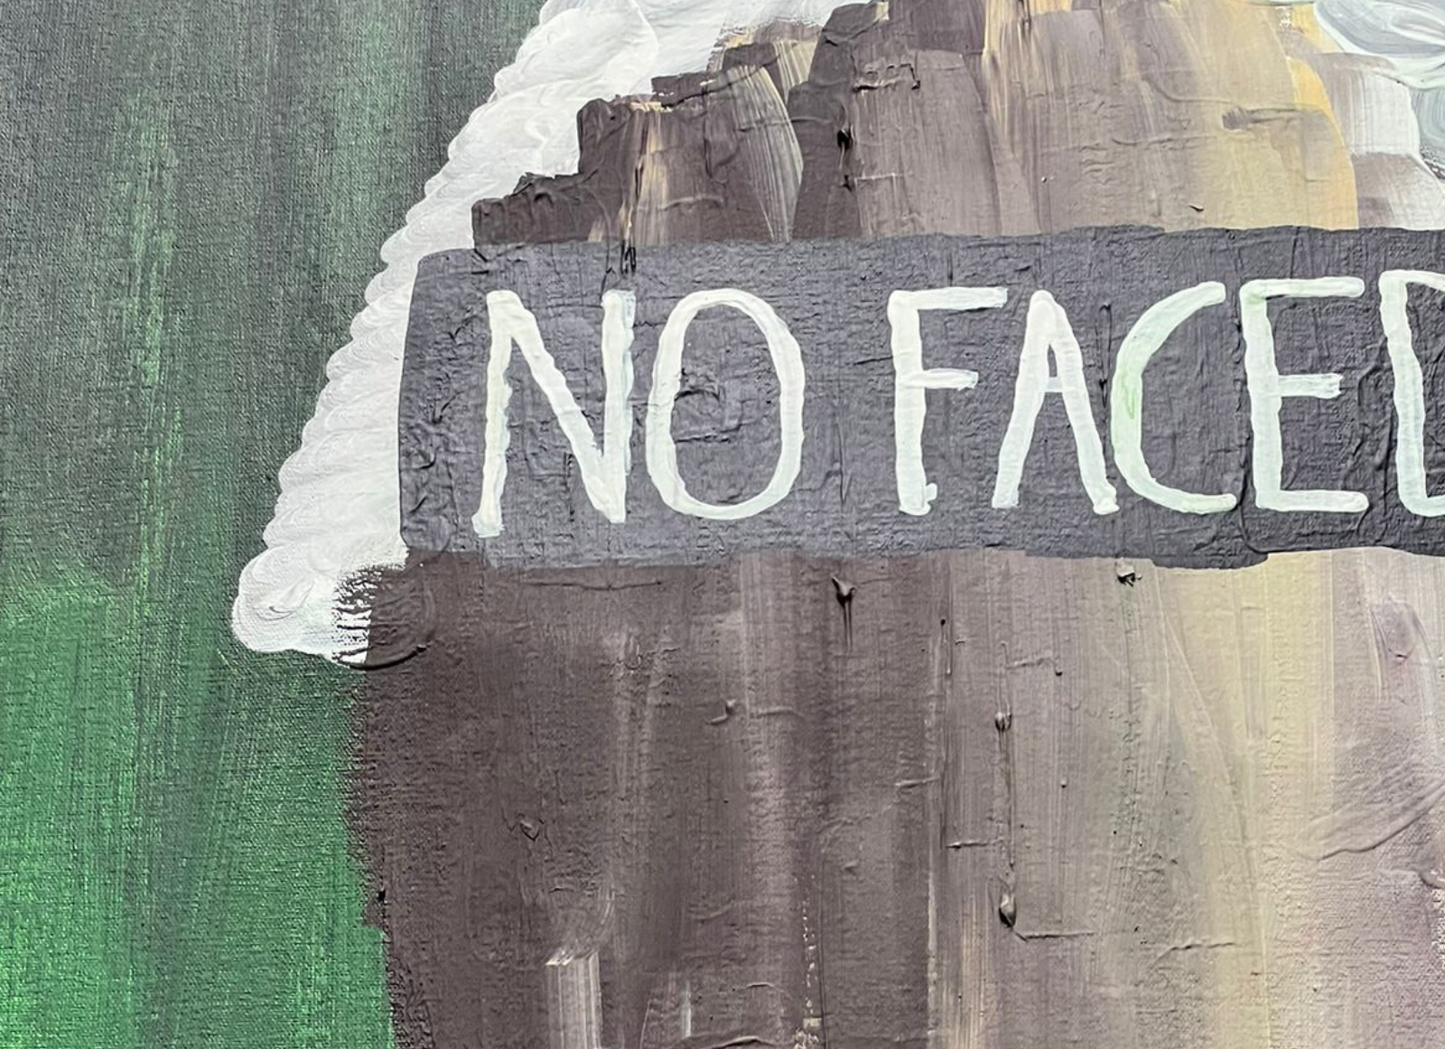 "NO FACED" by Alberto Sosa